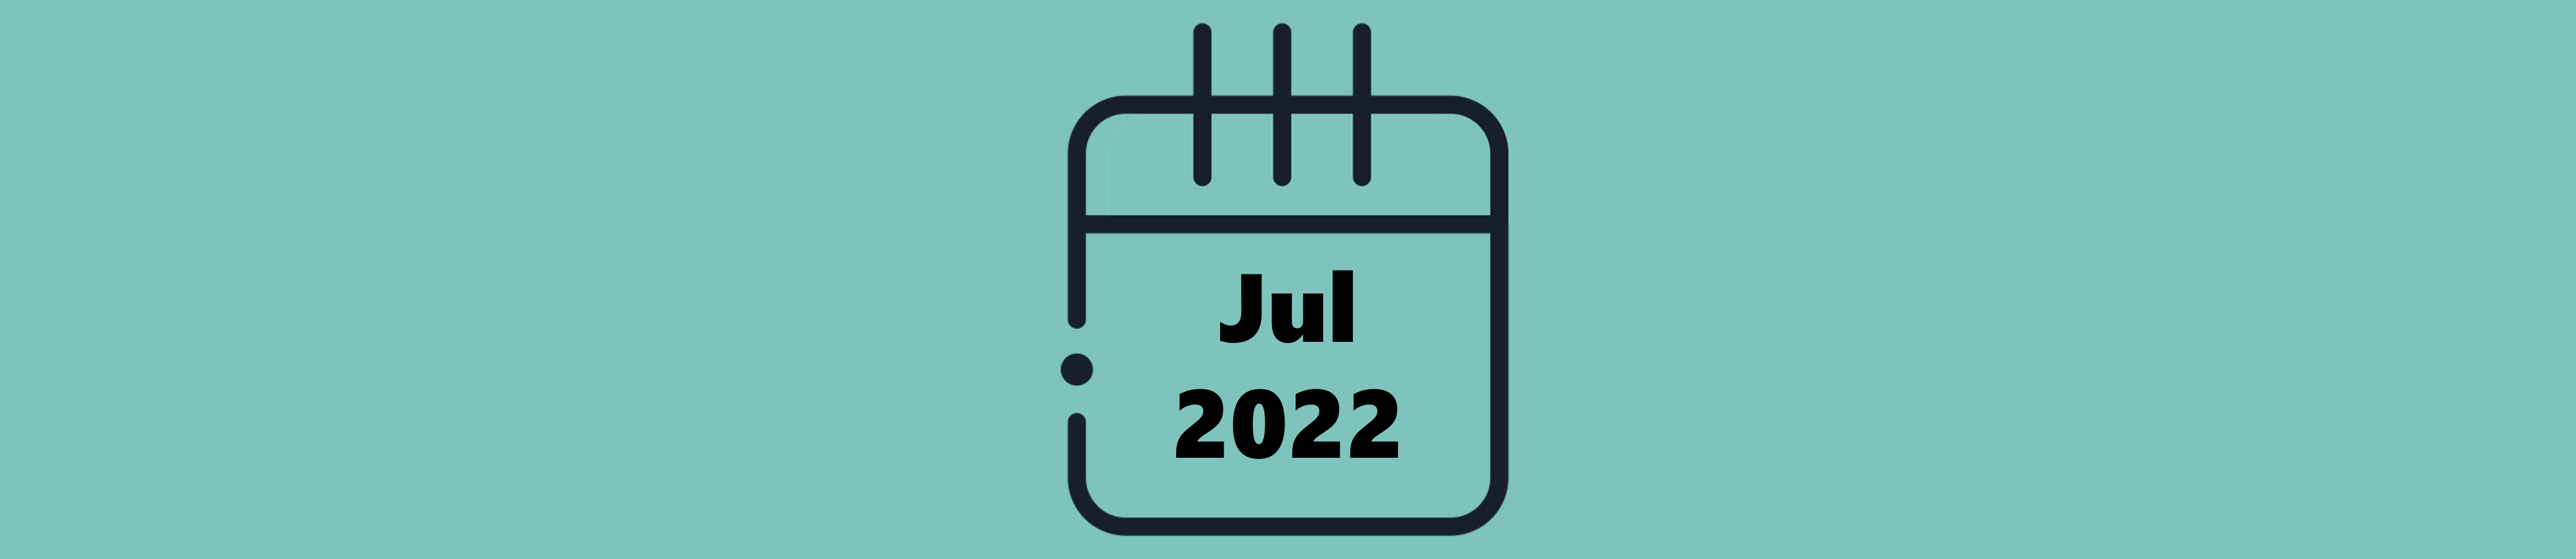 Indicações do Mês de Julho (2022)